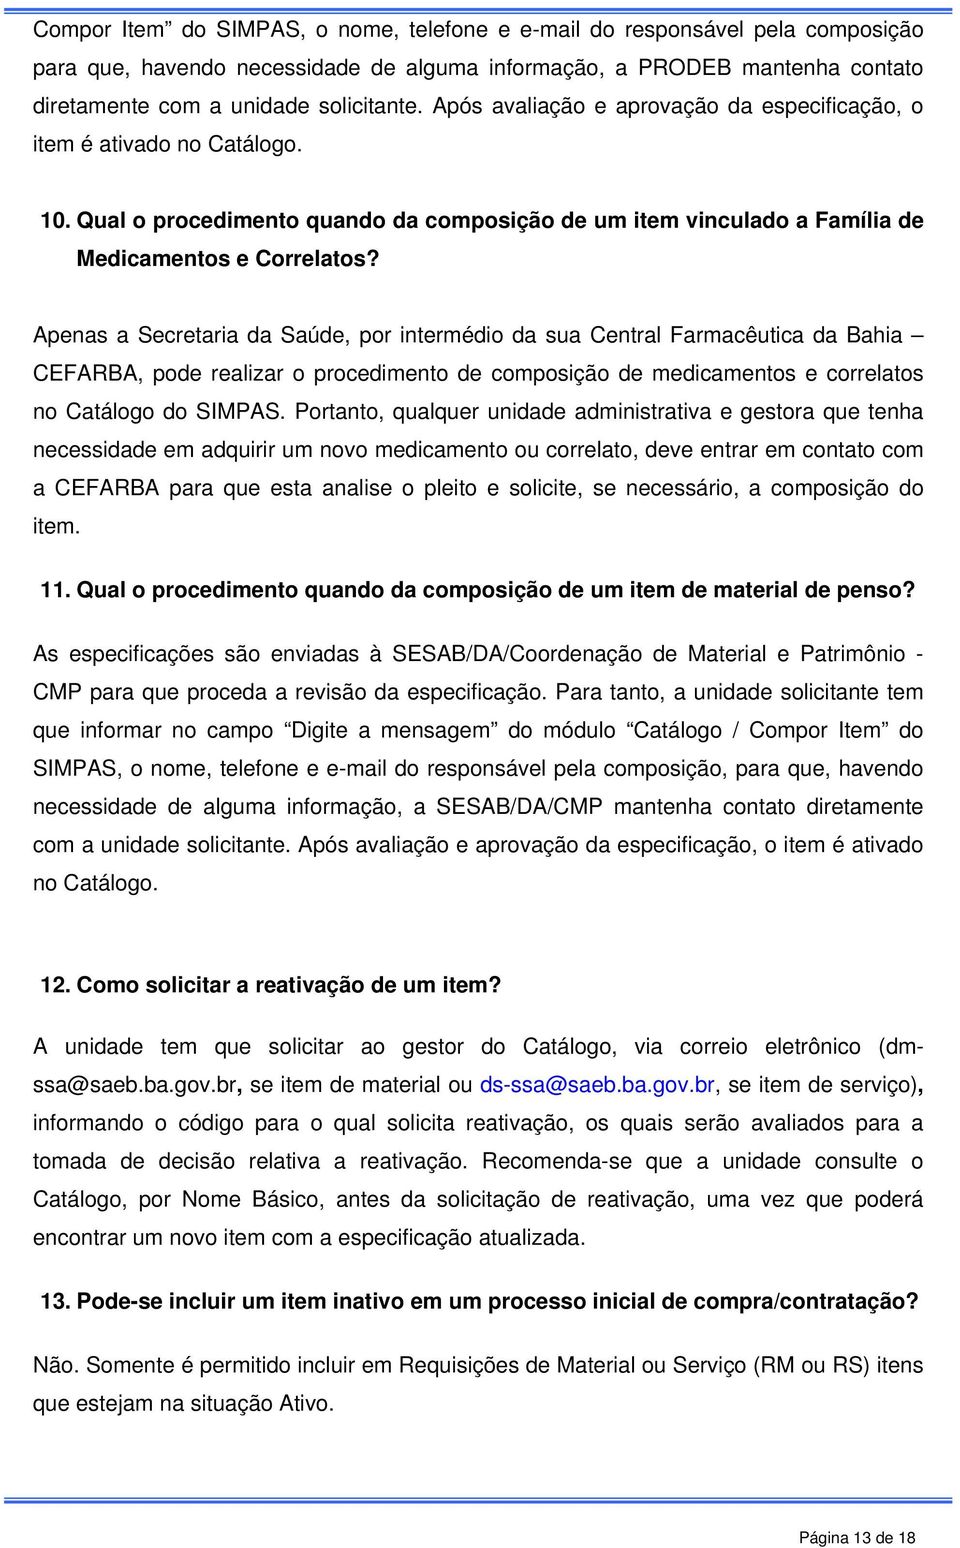 Apenas a Secretaria da Saúde, por intermédio da sua Central Farmacêutica da Bahia CEFARBA, pode realizar o procedimento de composição de medicamentos e correlatos no Catálogo do SIMPAS.